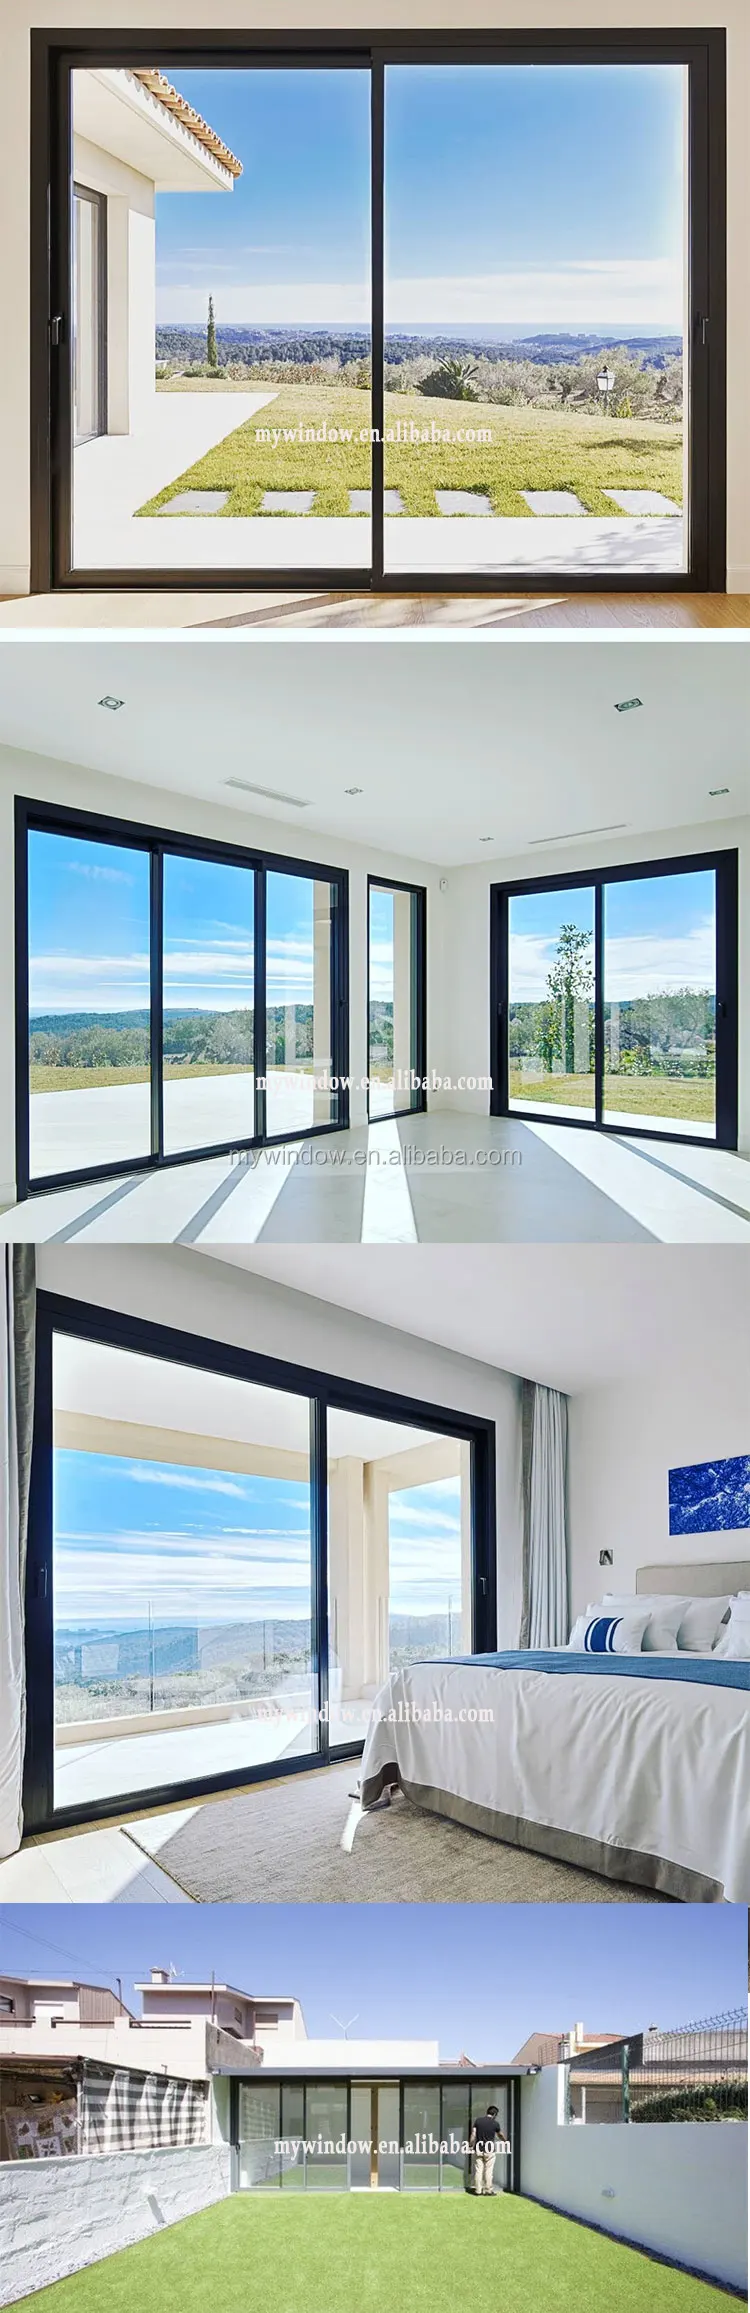 最新设计双釉法国铝框玻璃窗滑动与便宜的价格